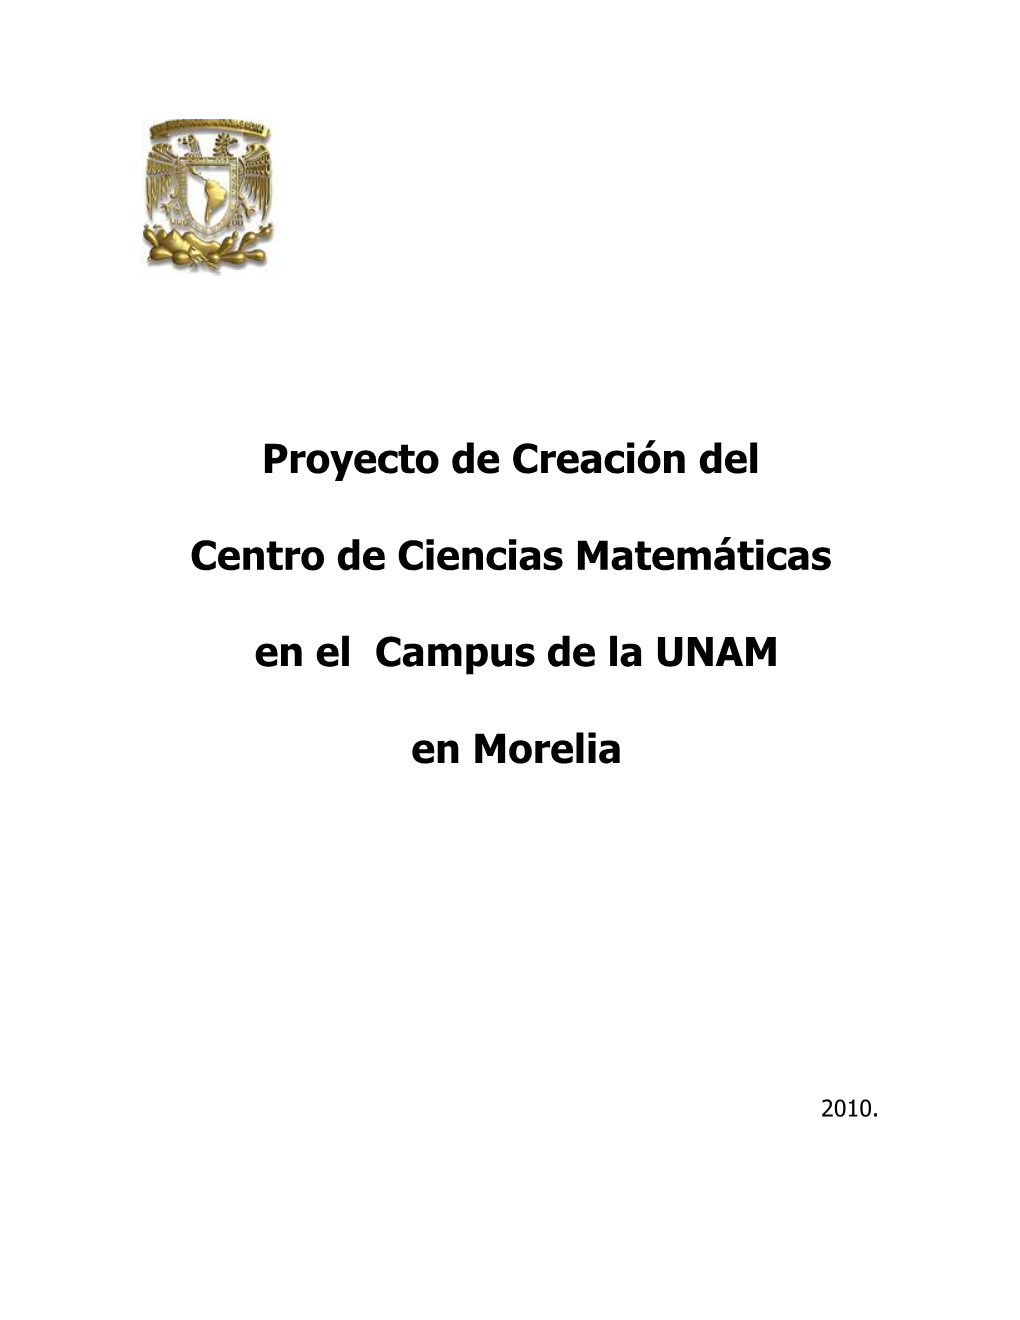 Proyecto De Creación Del Centro De Ciencias Matemáticas En El Campus De La UNAM En Morelia